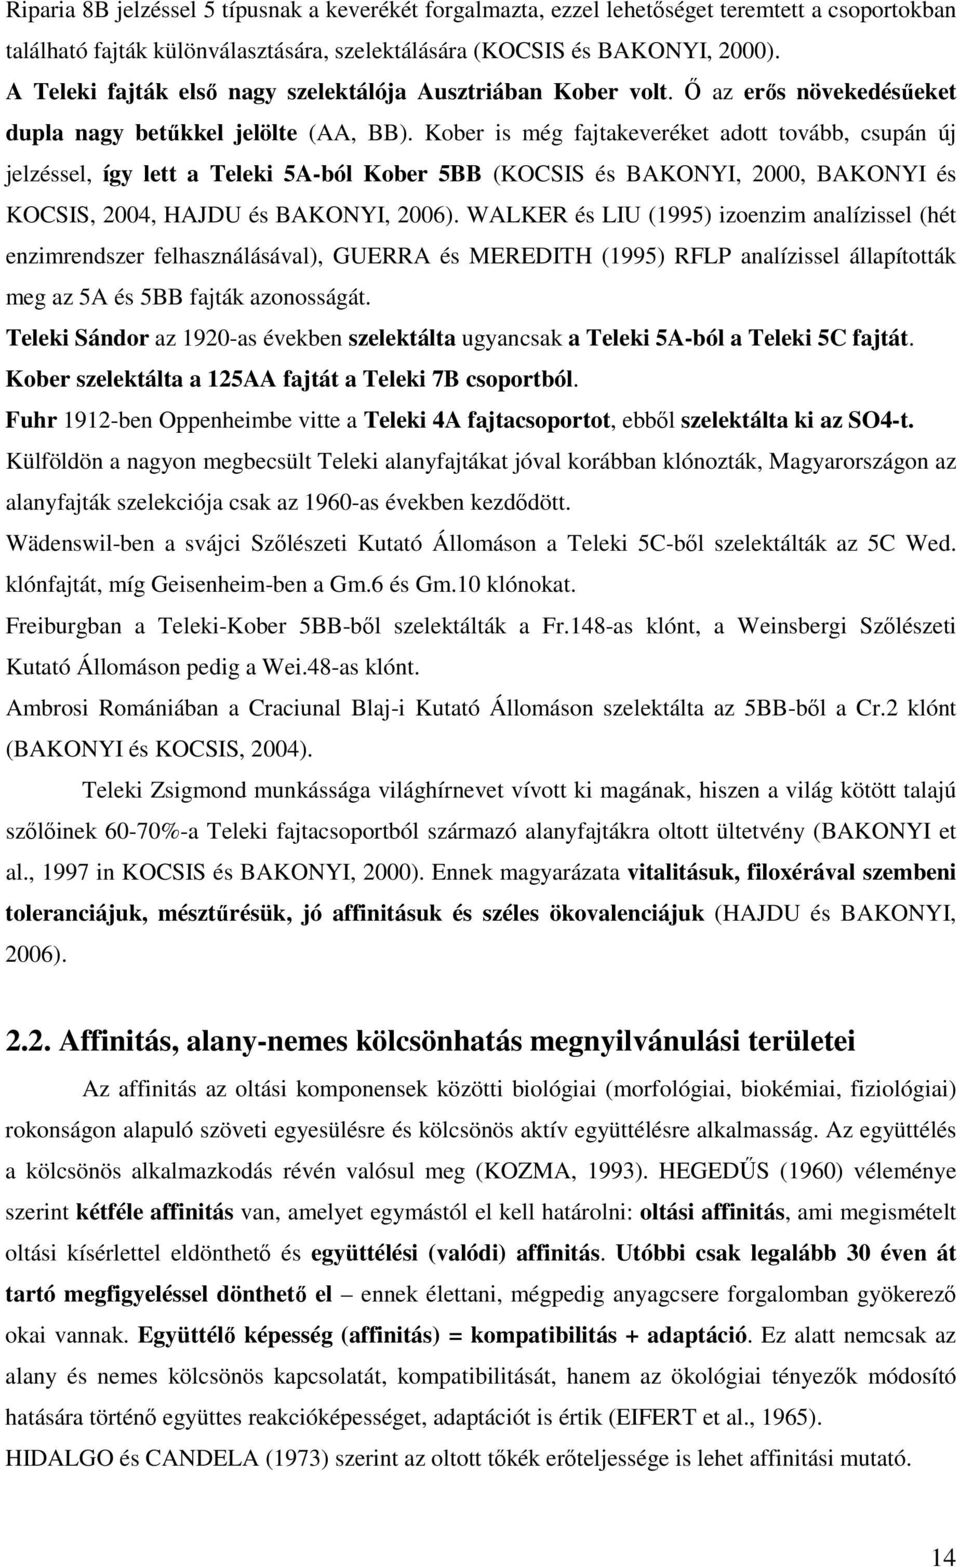 Kober is még fajtakeveréket adott tovább, csupán új jelzéssel, így lett a Teleki 5A-ból Kober 5BB (KOCSIS és BAKONYI, 2000, BAKONYI és KOCSIS, 2004, HAJDU és BAKONYI, 2006).